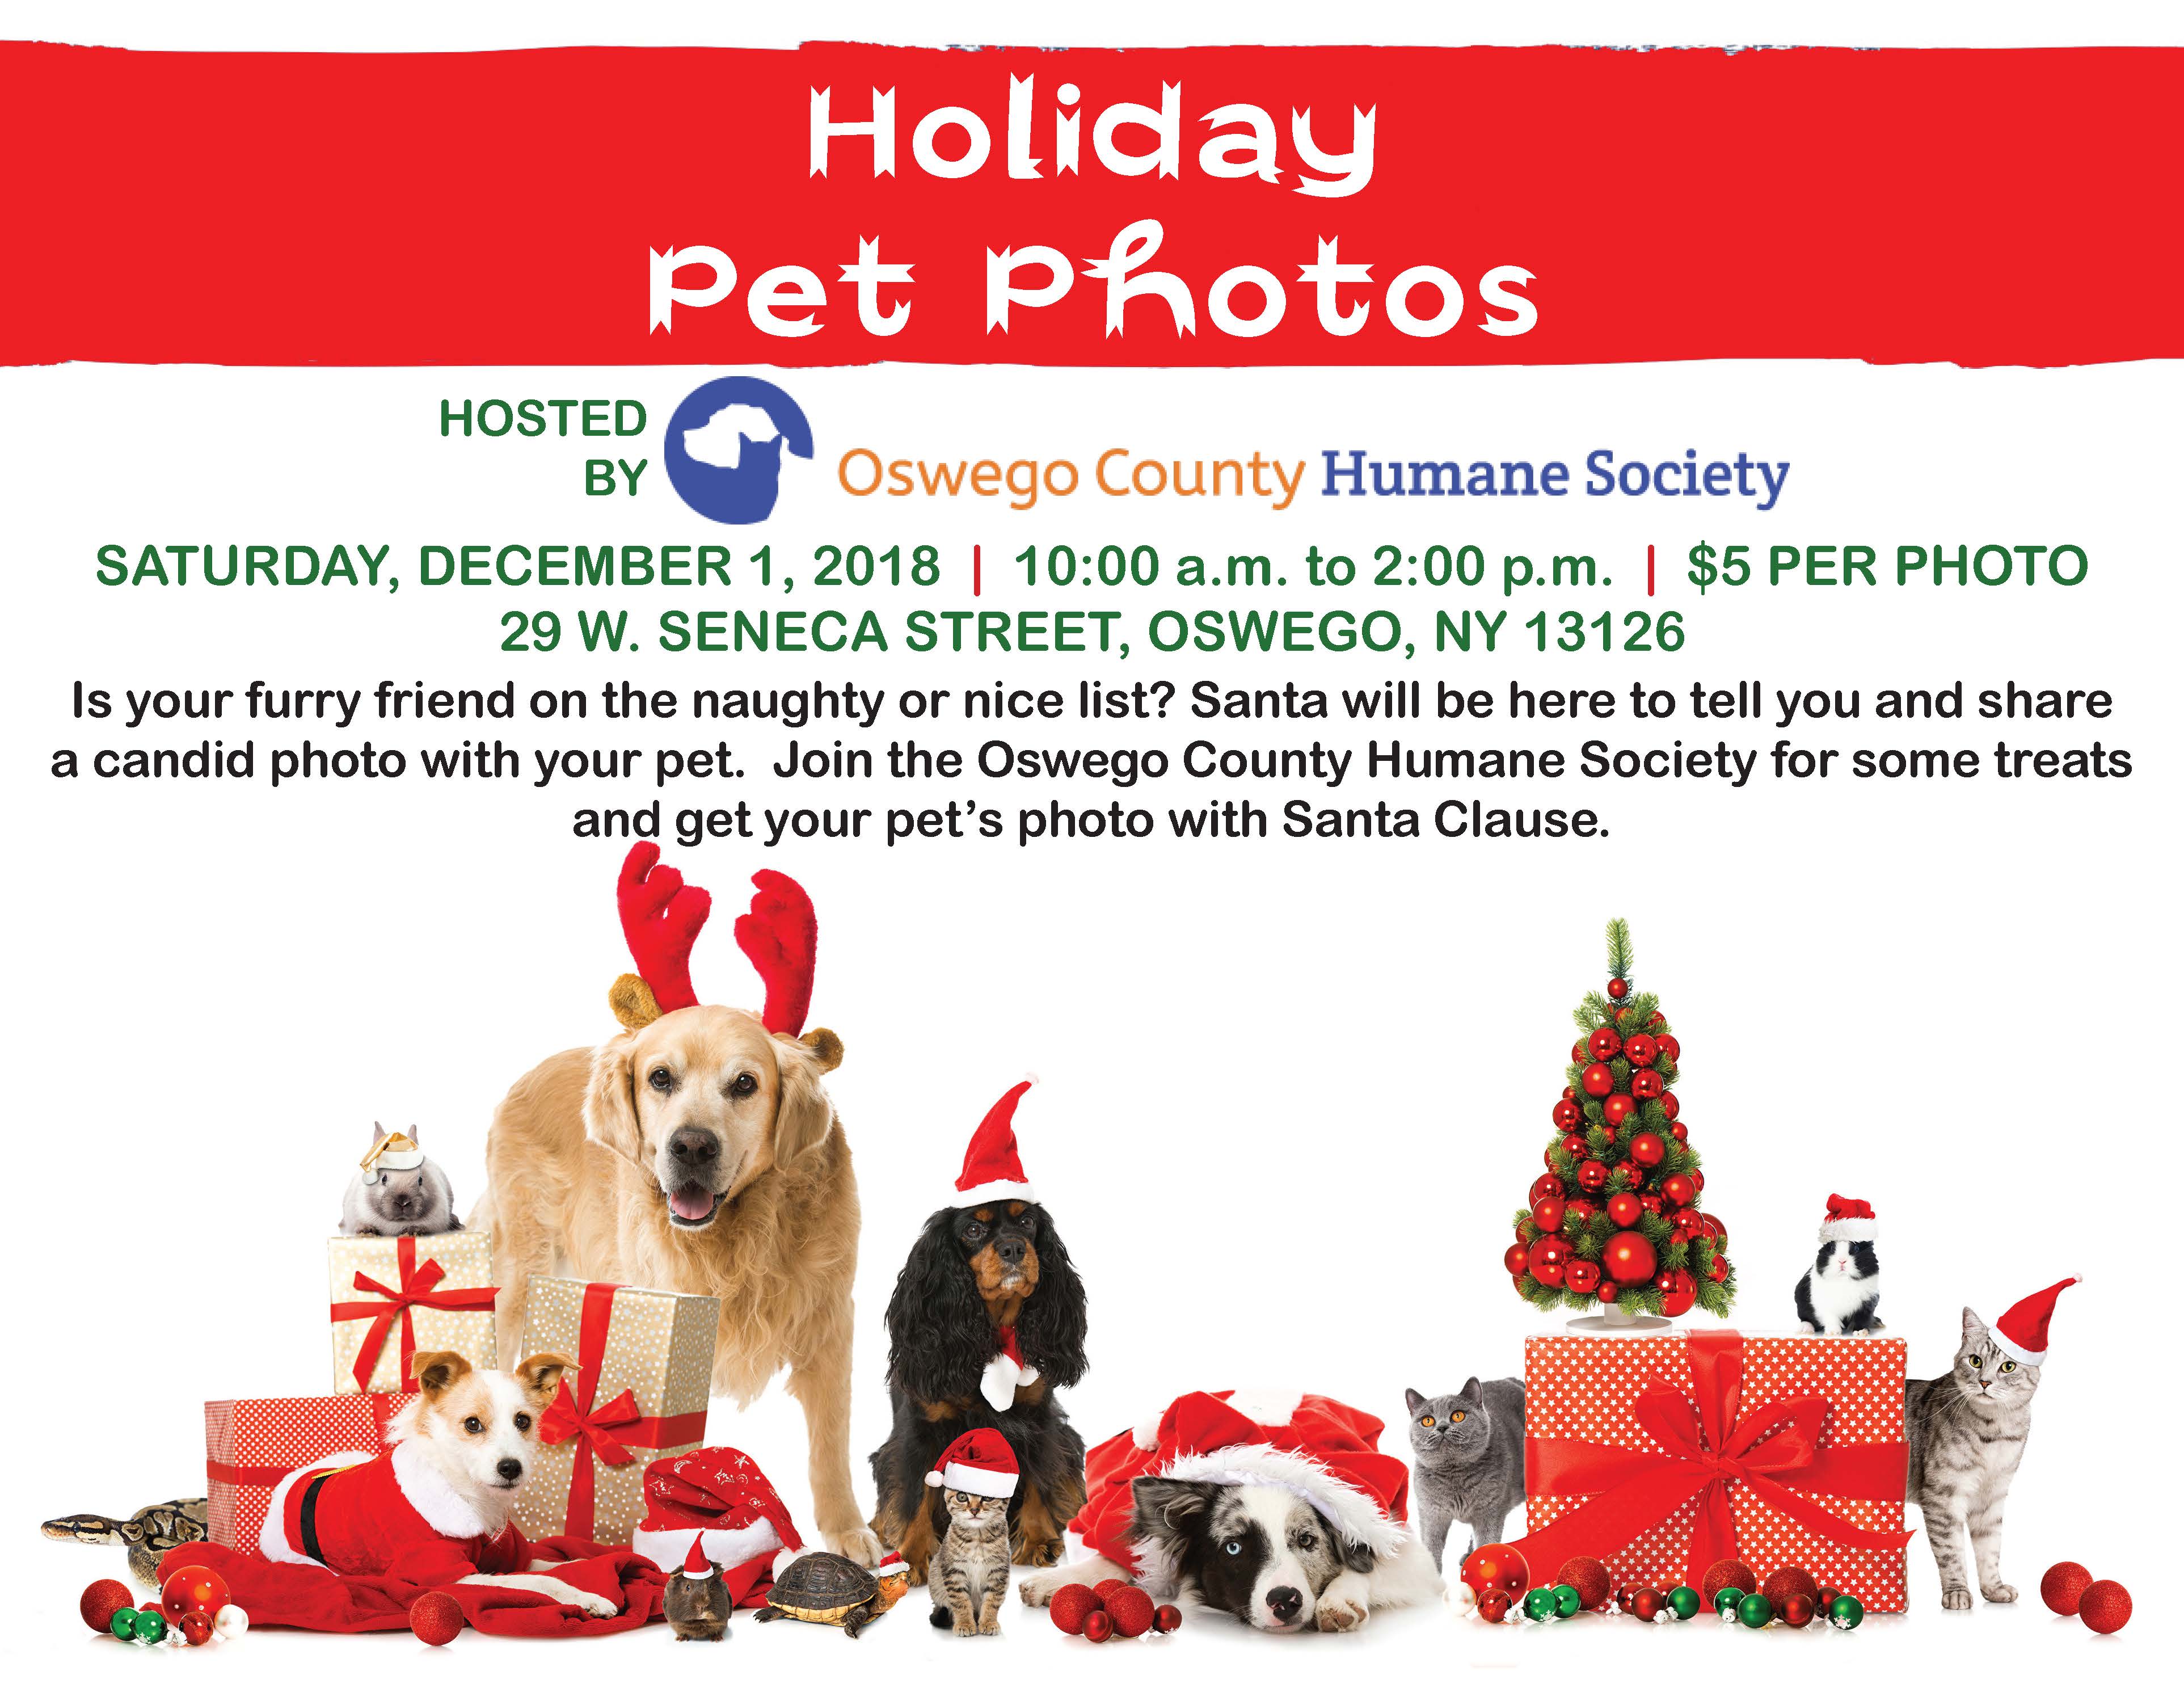 Holiday Pet Photos with Santa - Oswego County Humane Society